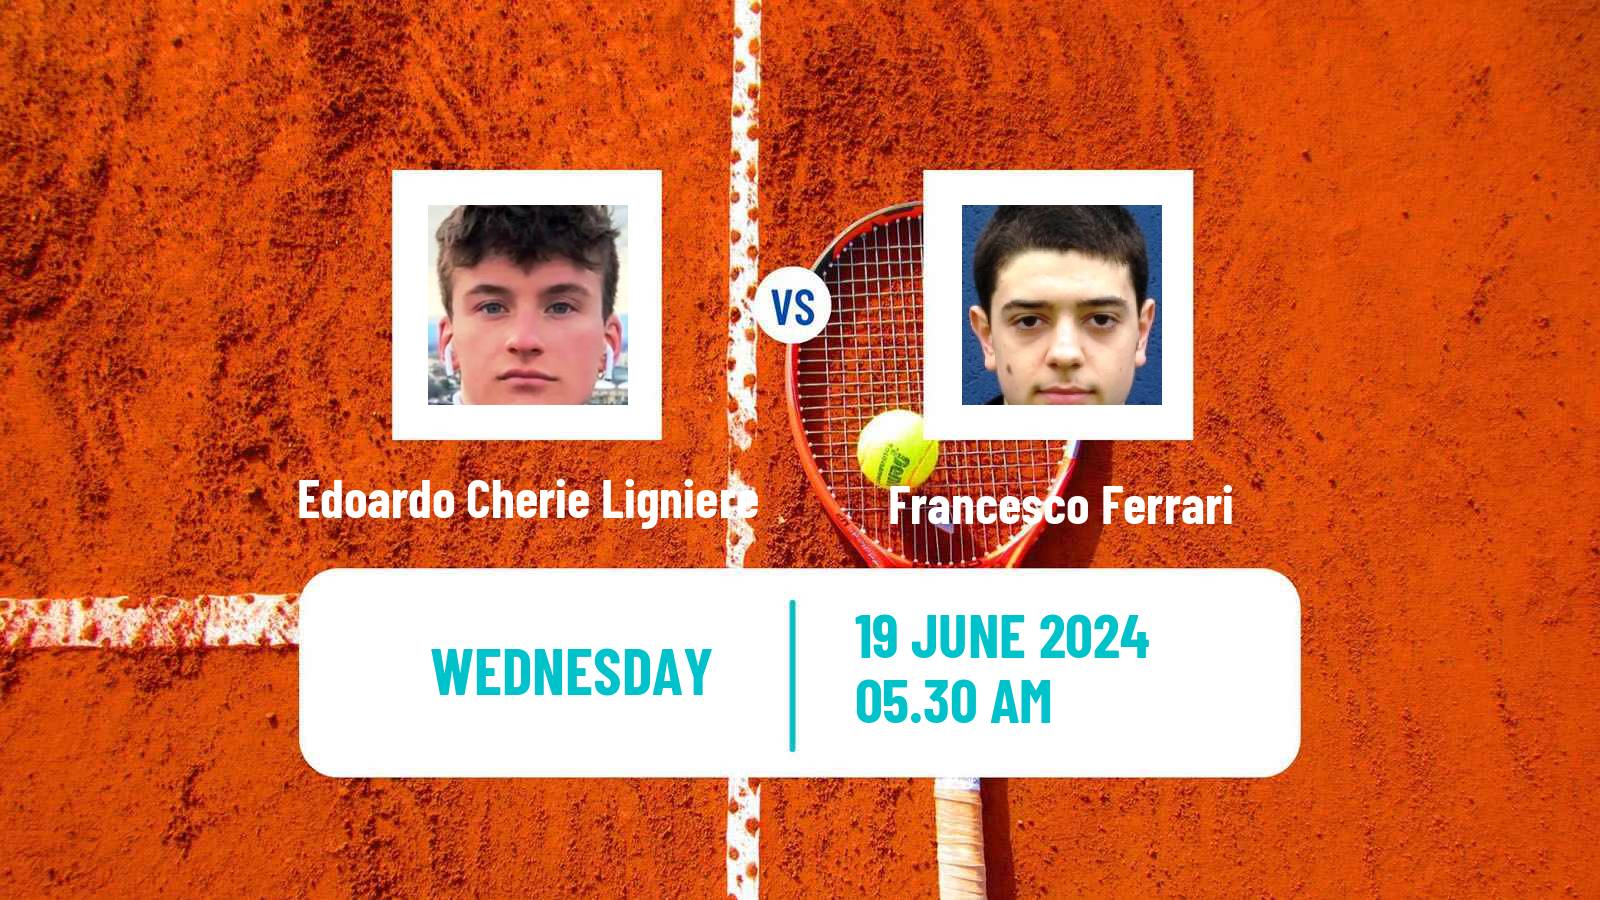 Tennis ITF M15 Nyiregyhaza 2 Men Edoardo Cherie Ligniere - Francesco Ferrari